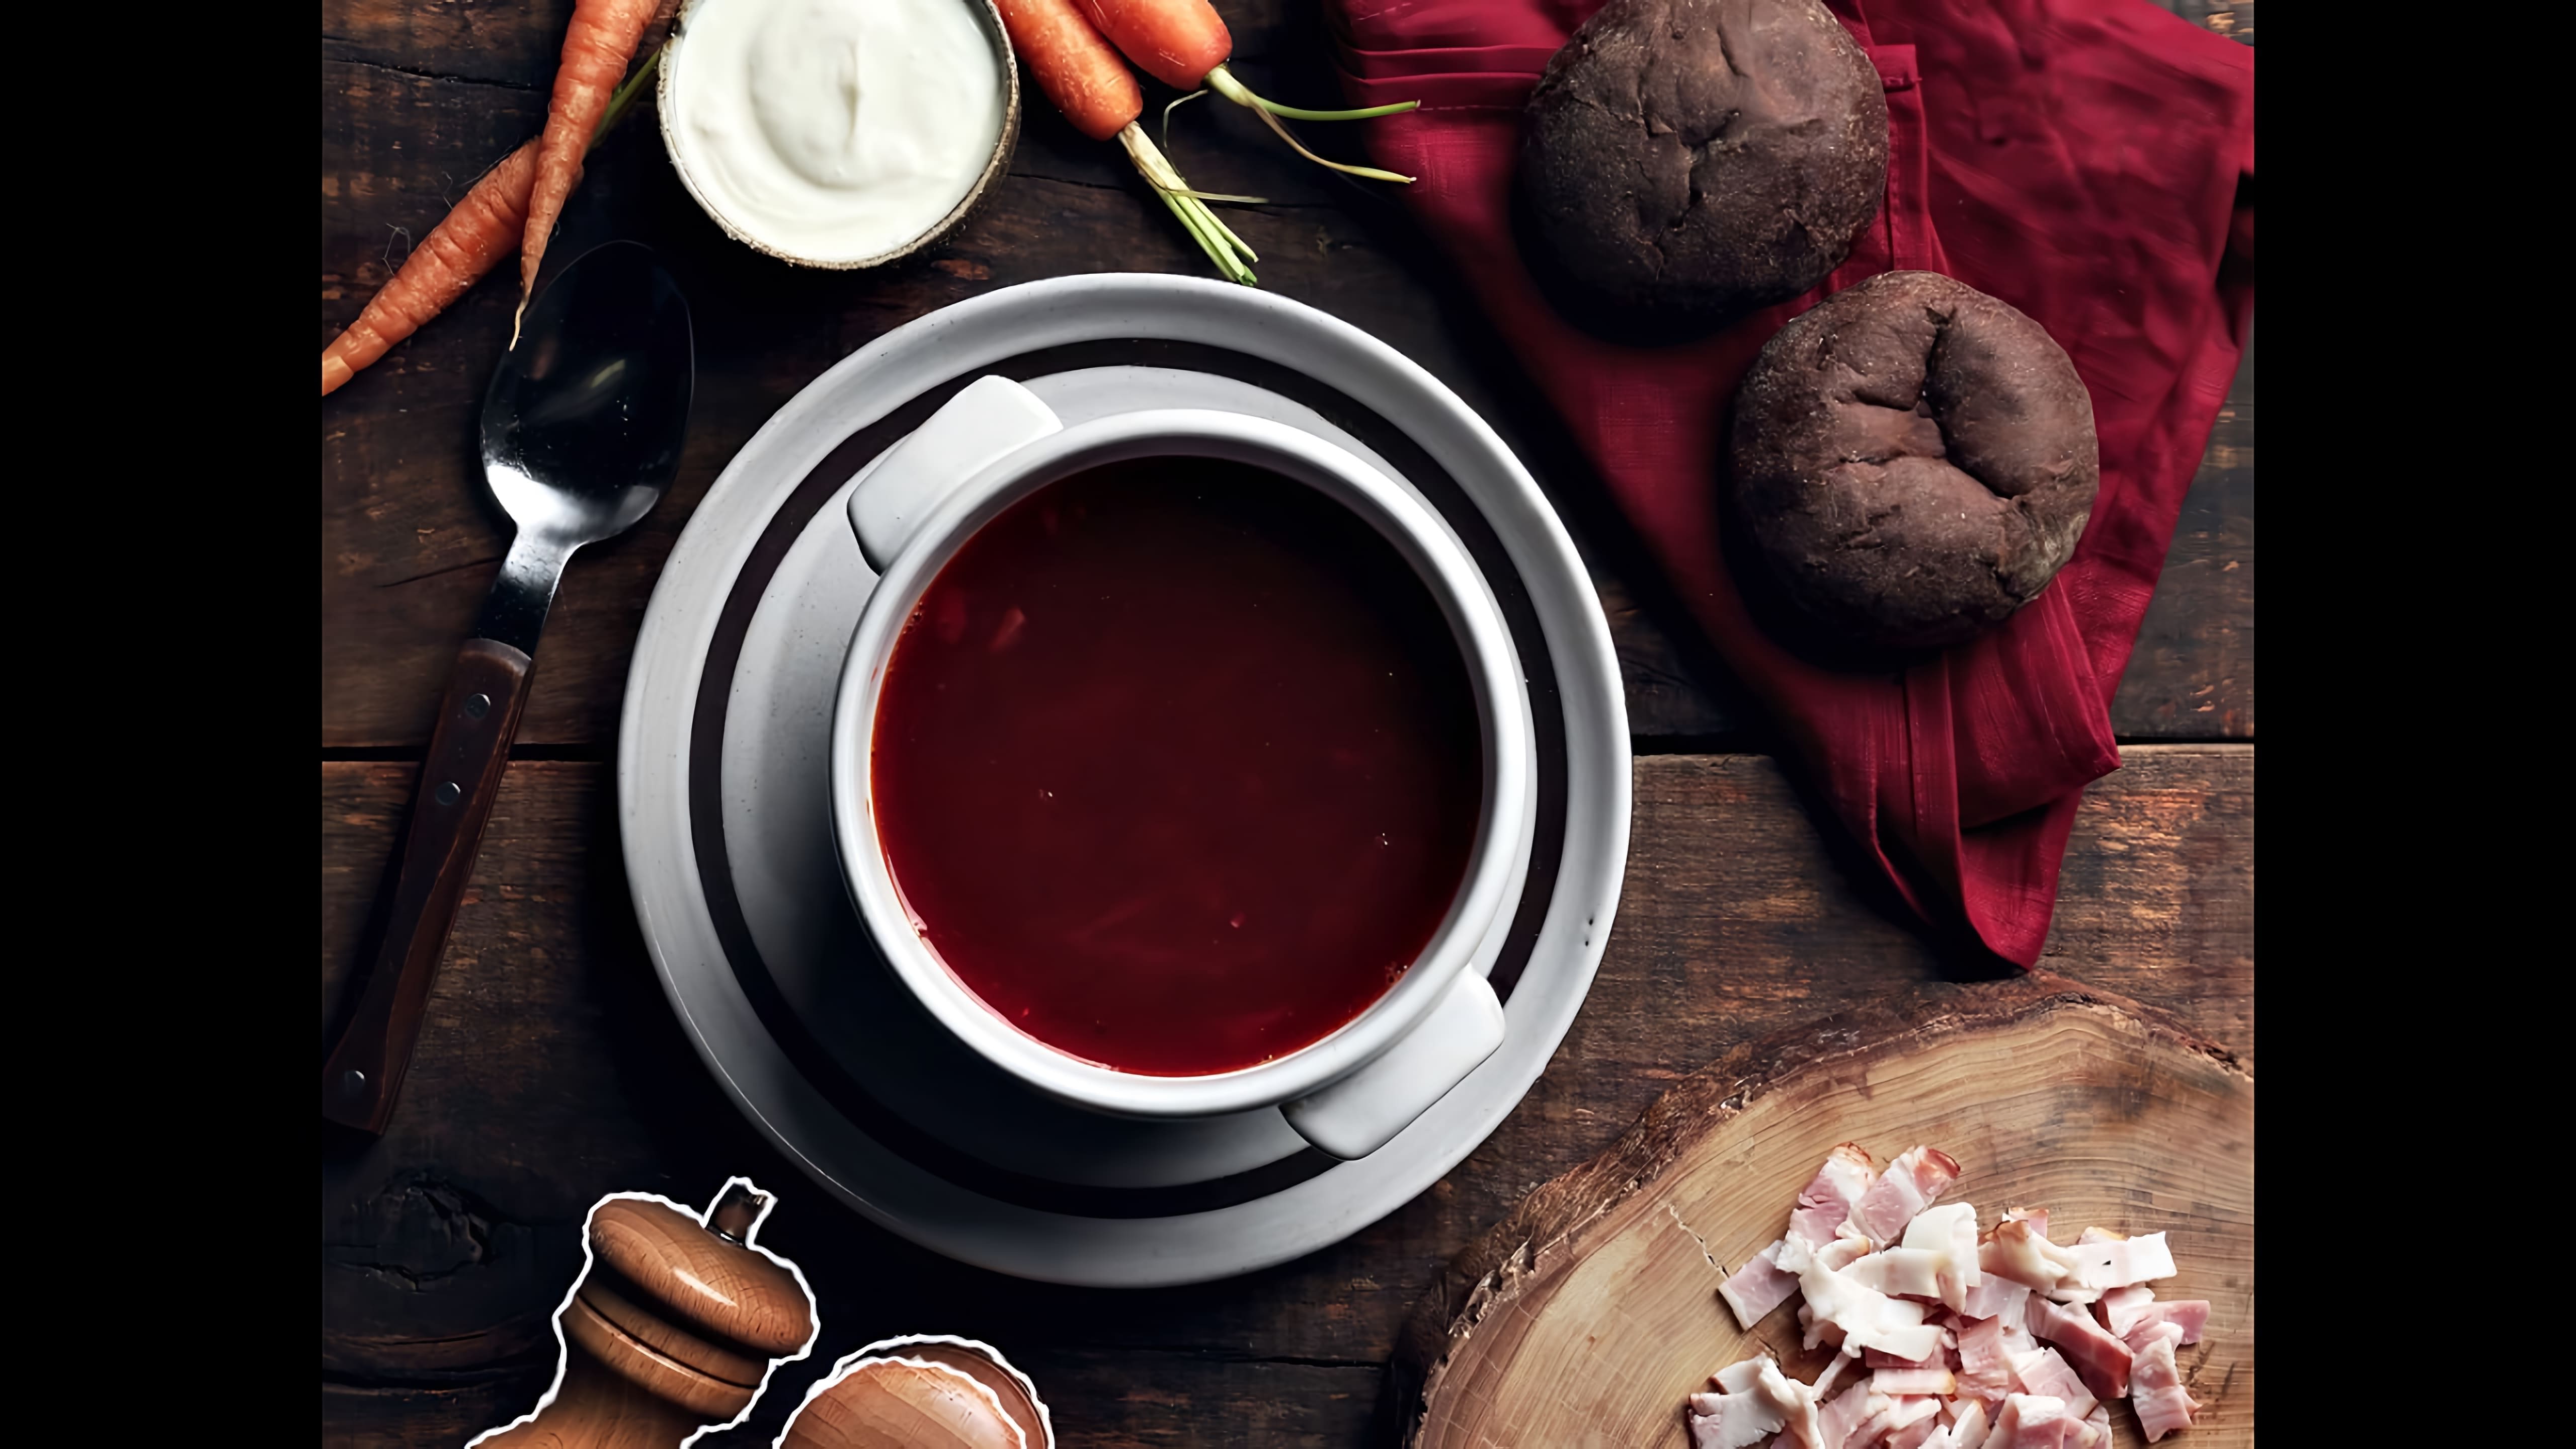 Борщ "Теремковский" - это вкусное и ароматное блюдо, которое можно приготовить в домашних условиях